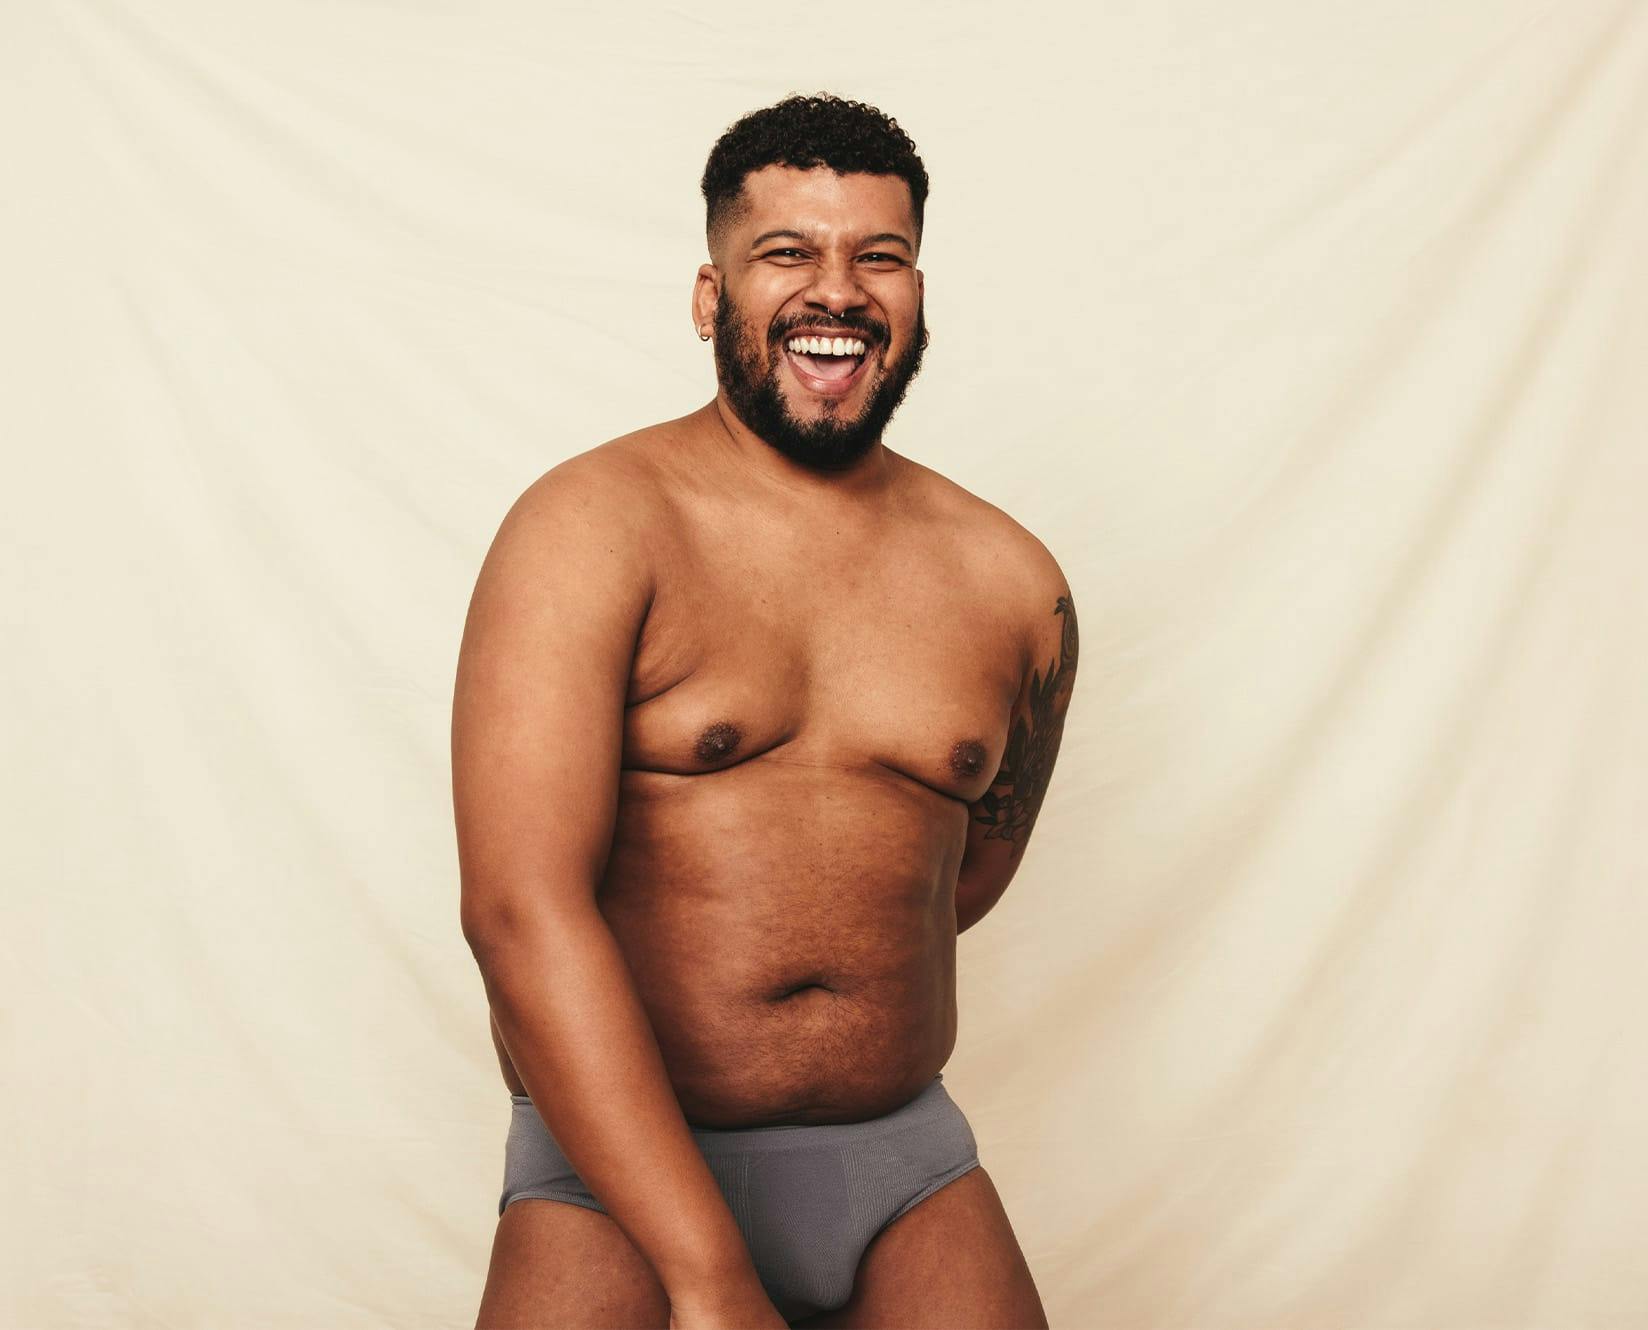 man in underwear smiling